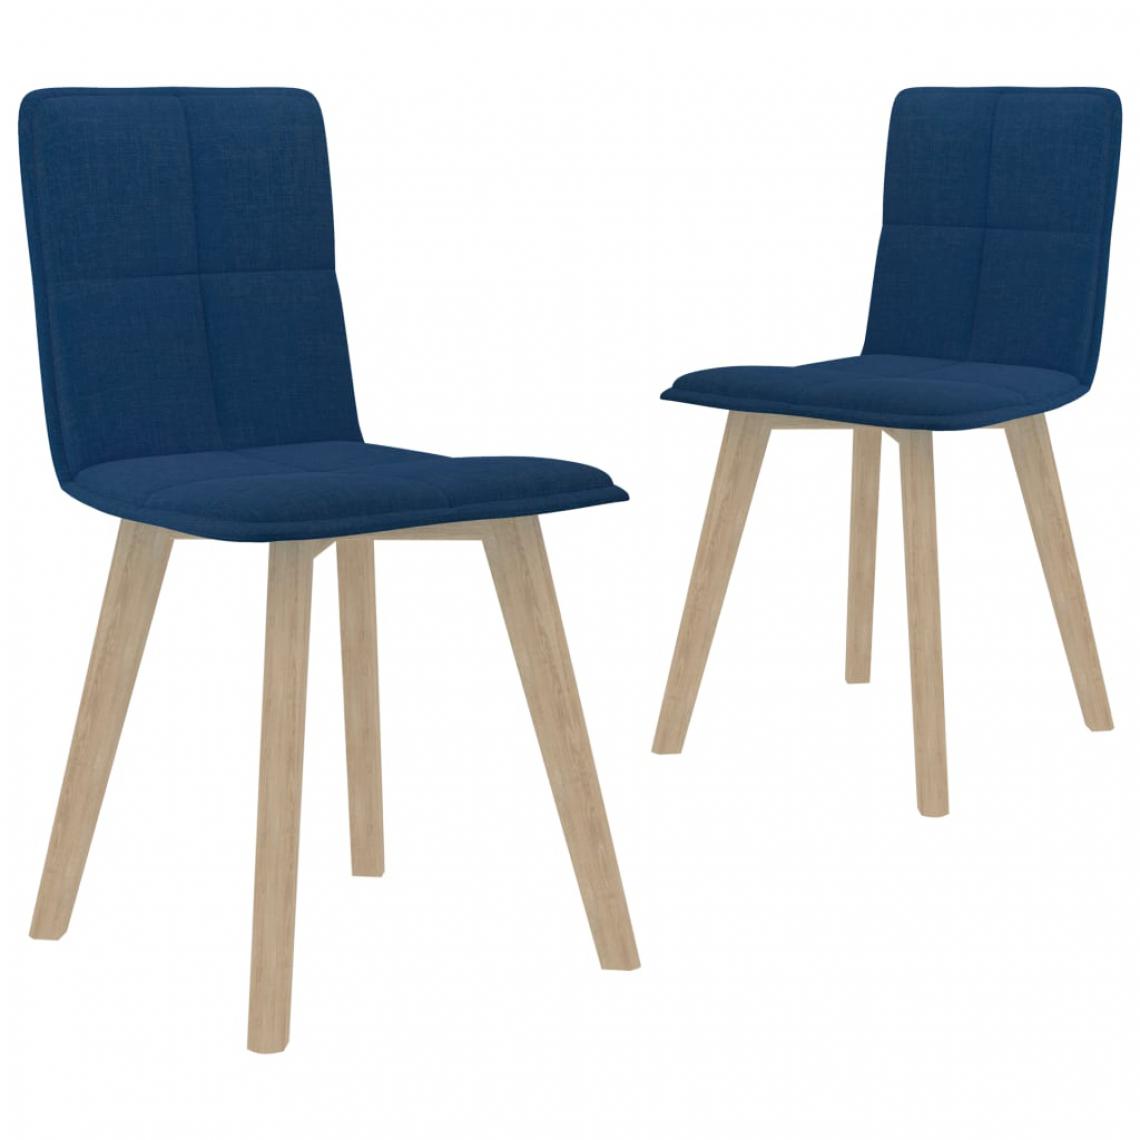 Icaverne - Admirable Fauteuils et chaises collection Brazzaville Chaises de salle à manger 2 pcs Bleu Tissu - Chaises